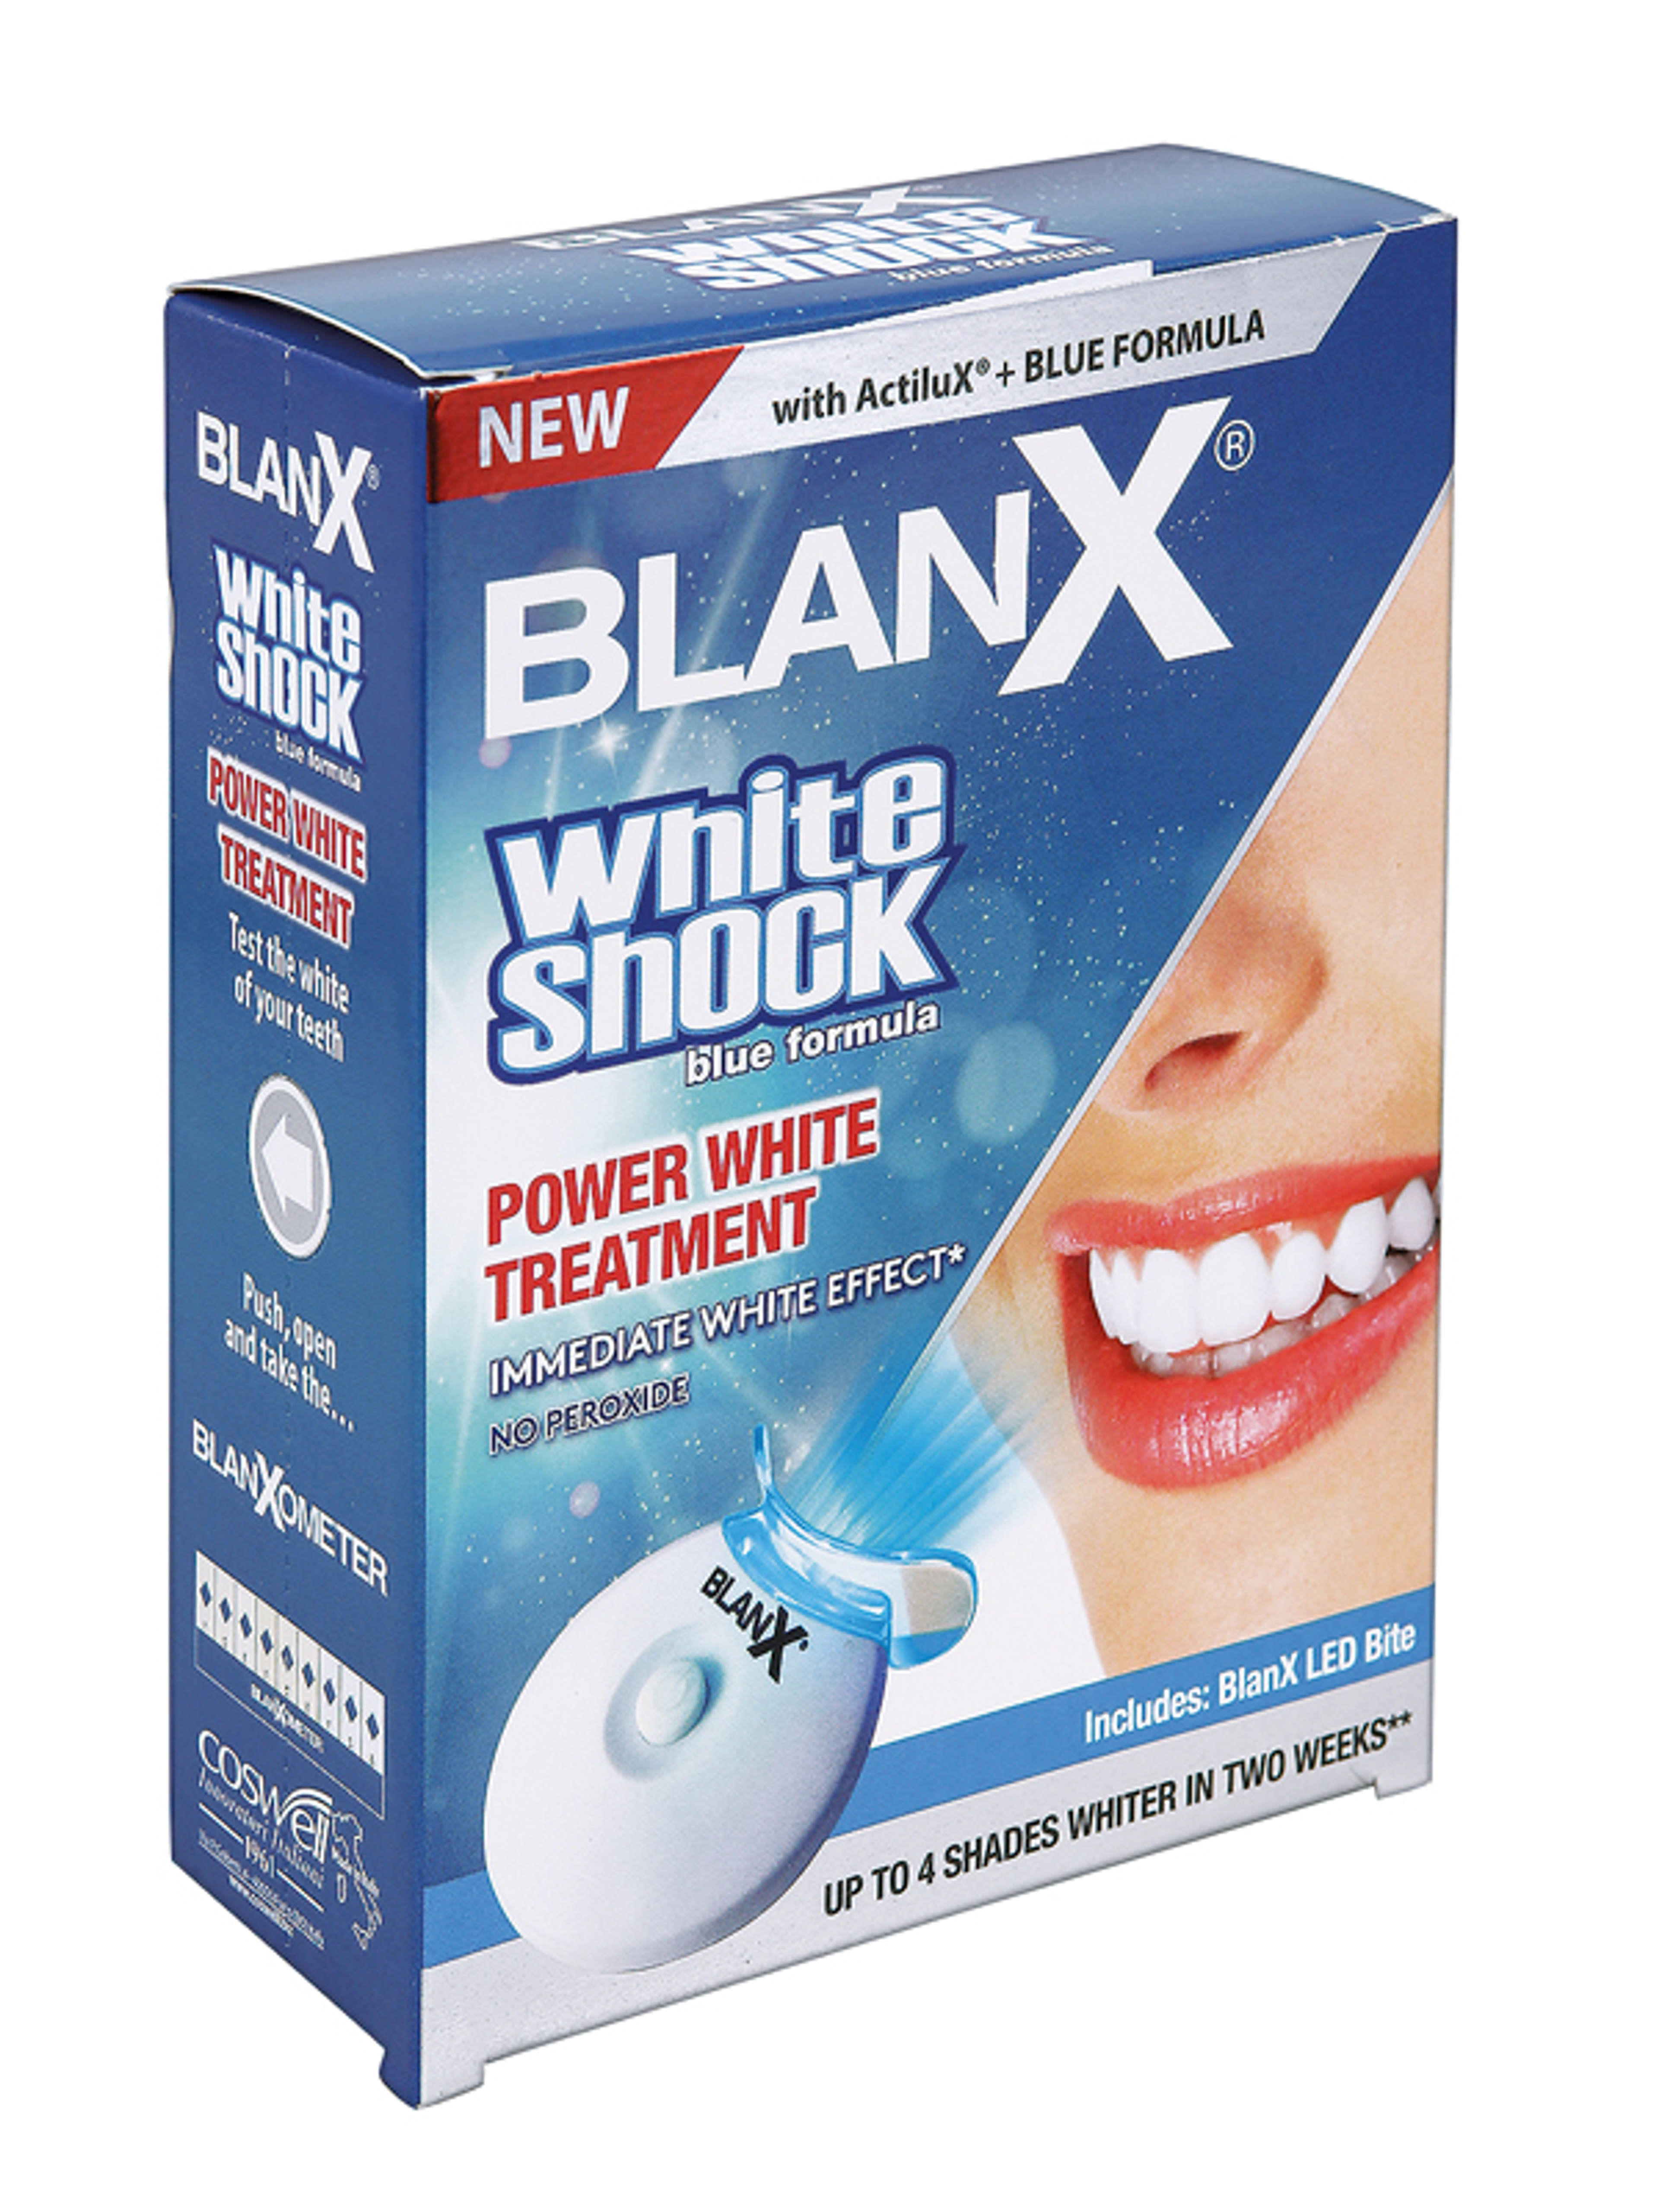 Blanx White Shock + led bite fogkrém - 50 ml-1